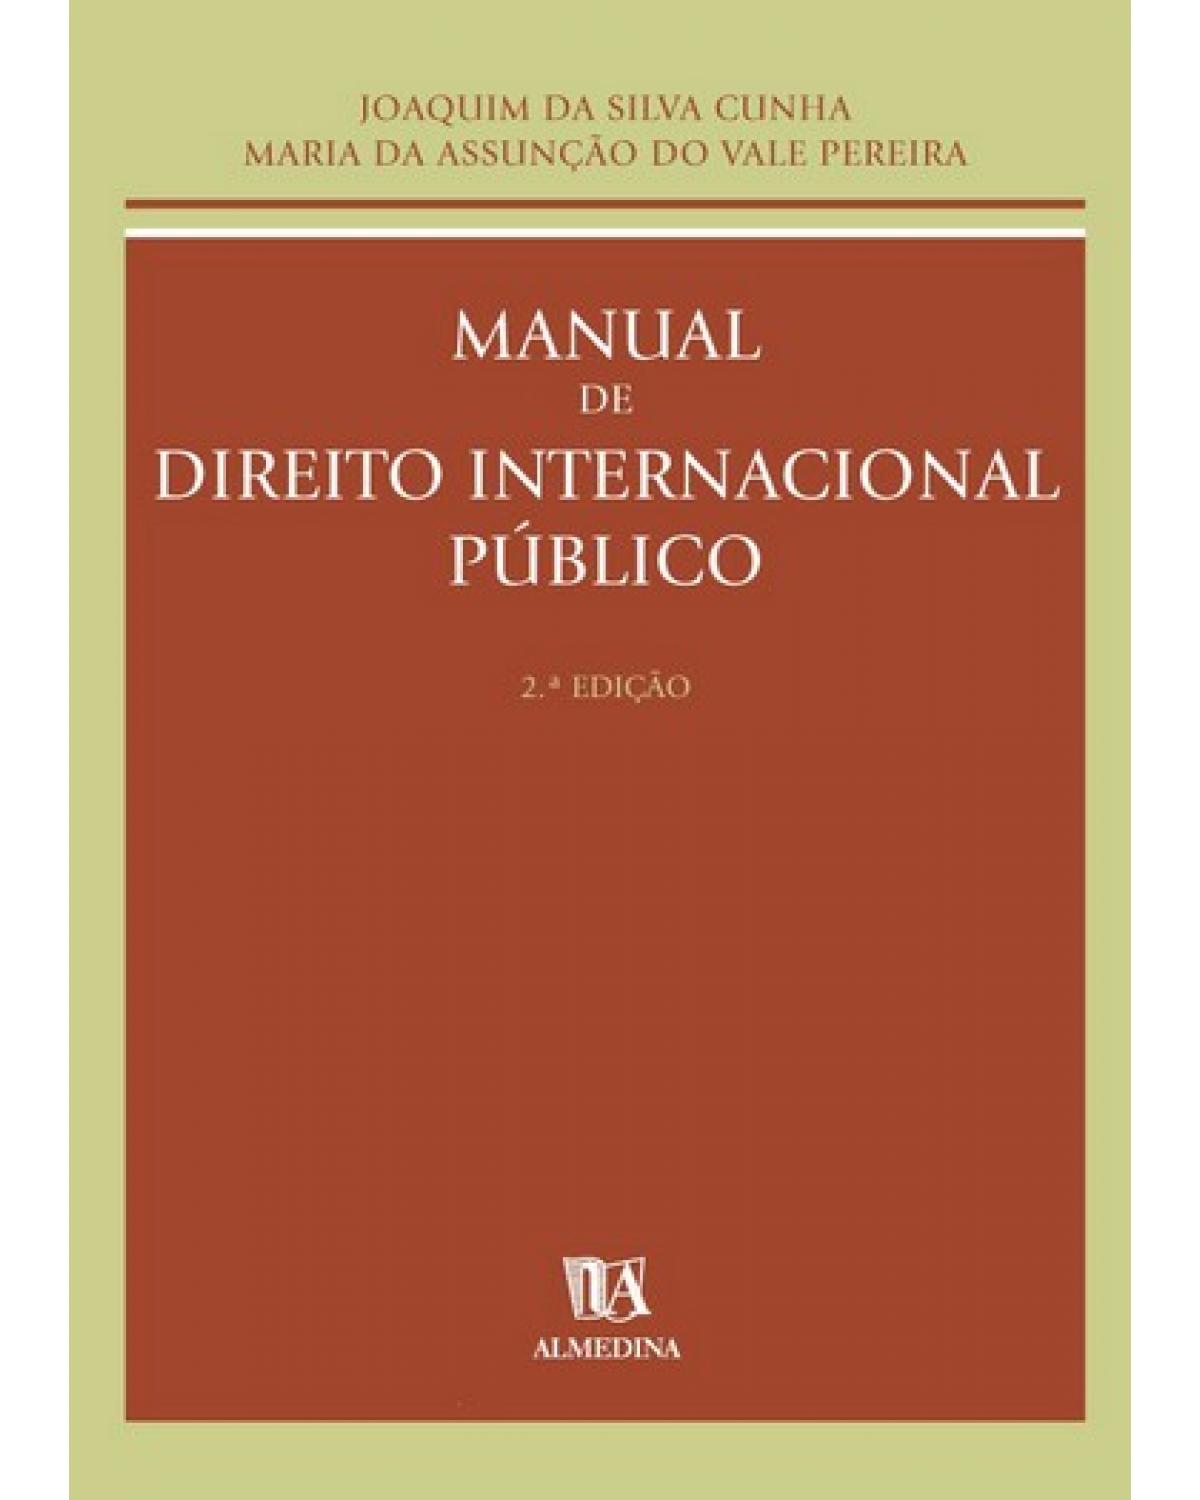 Manual de direito internacional público - 2ª Edição | 2004